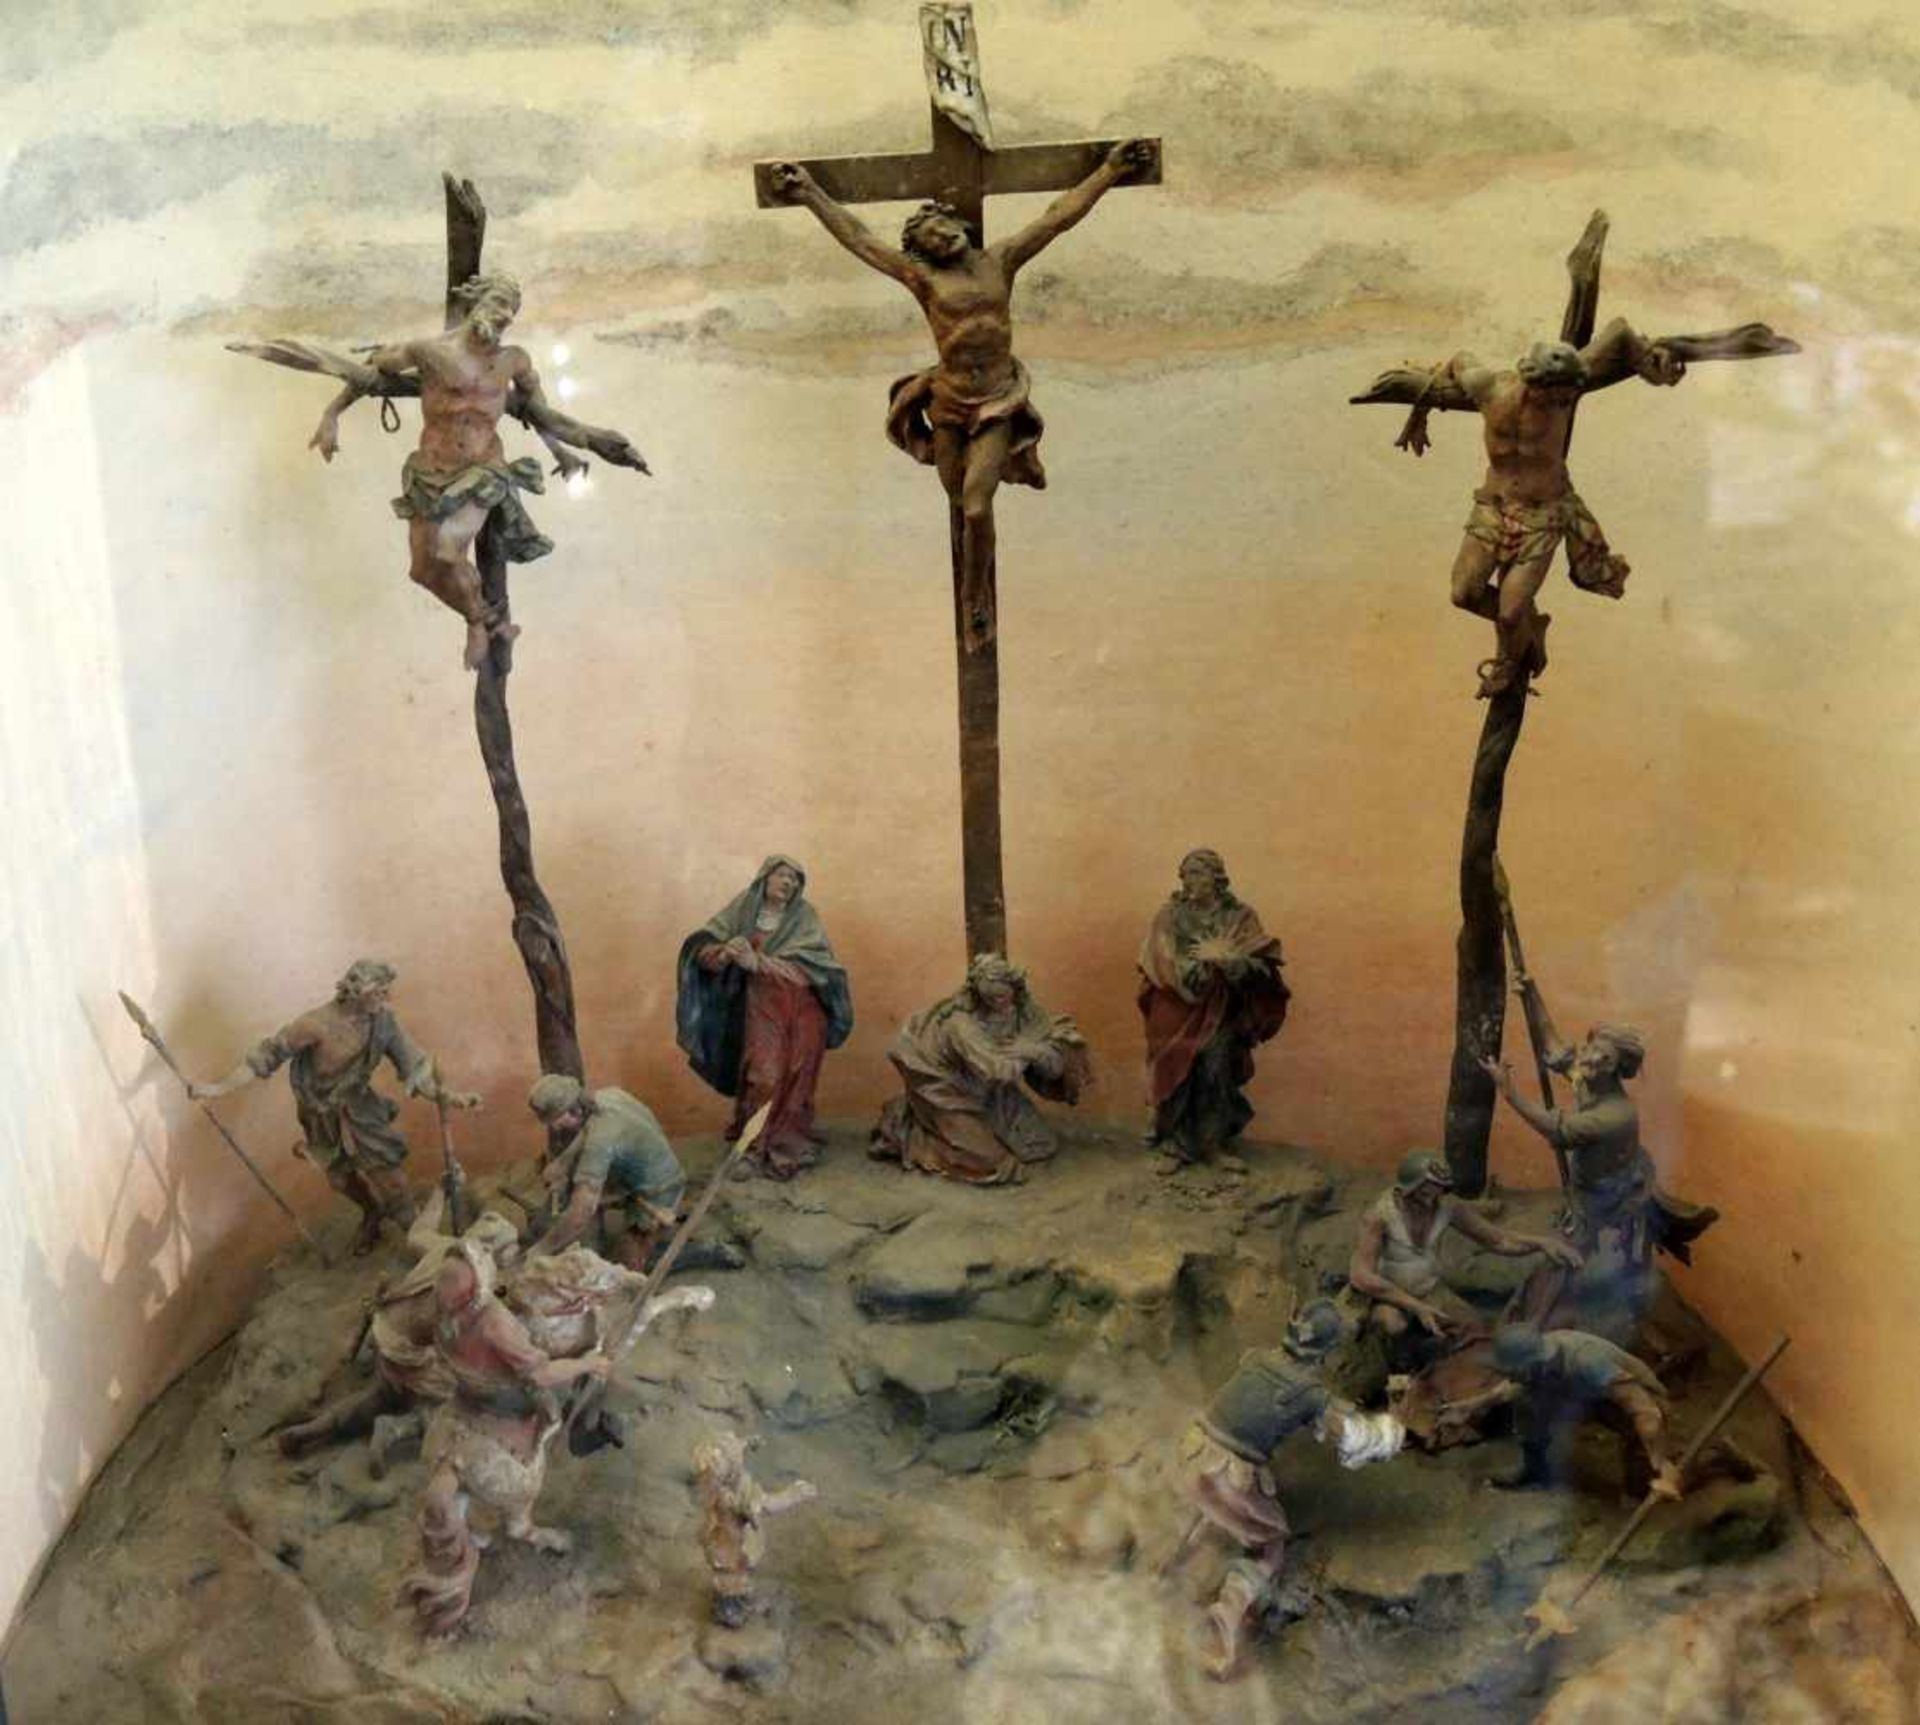 Schaukasten - Biblische DarstellungVerglaster Schaukasten mit Darstellung der Kreuzigung Christi. - Image 2 of 3